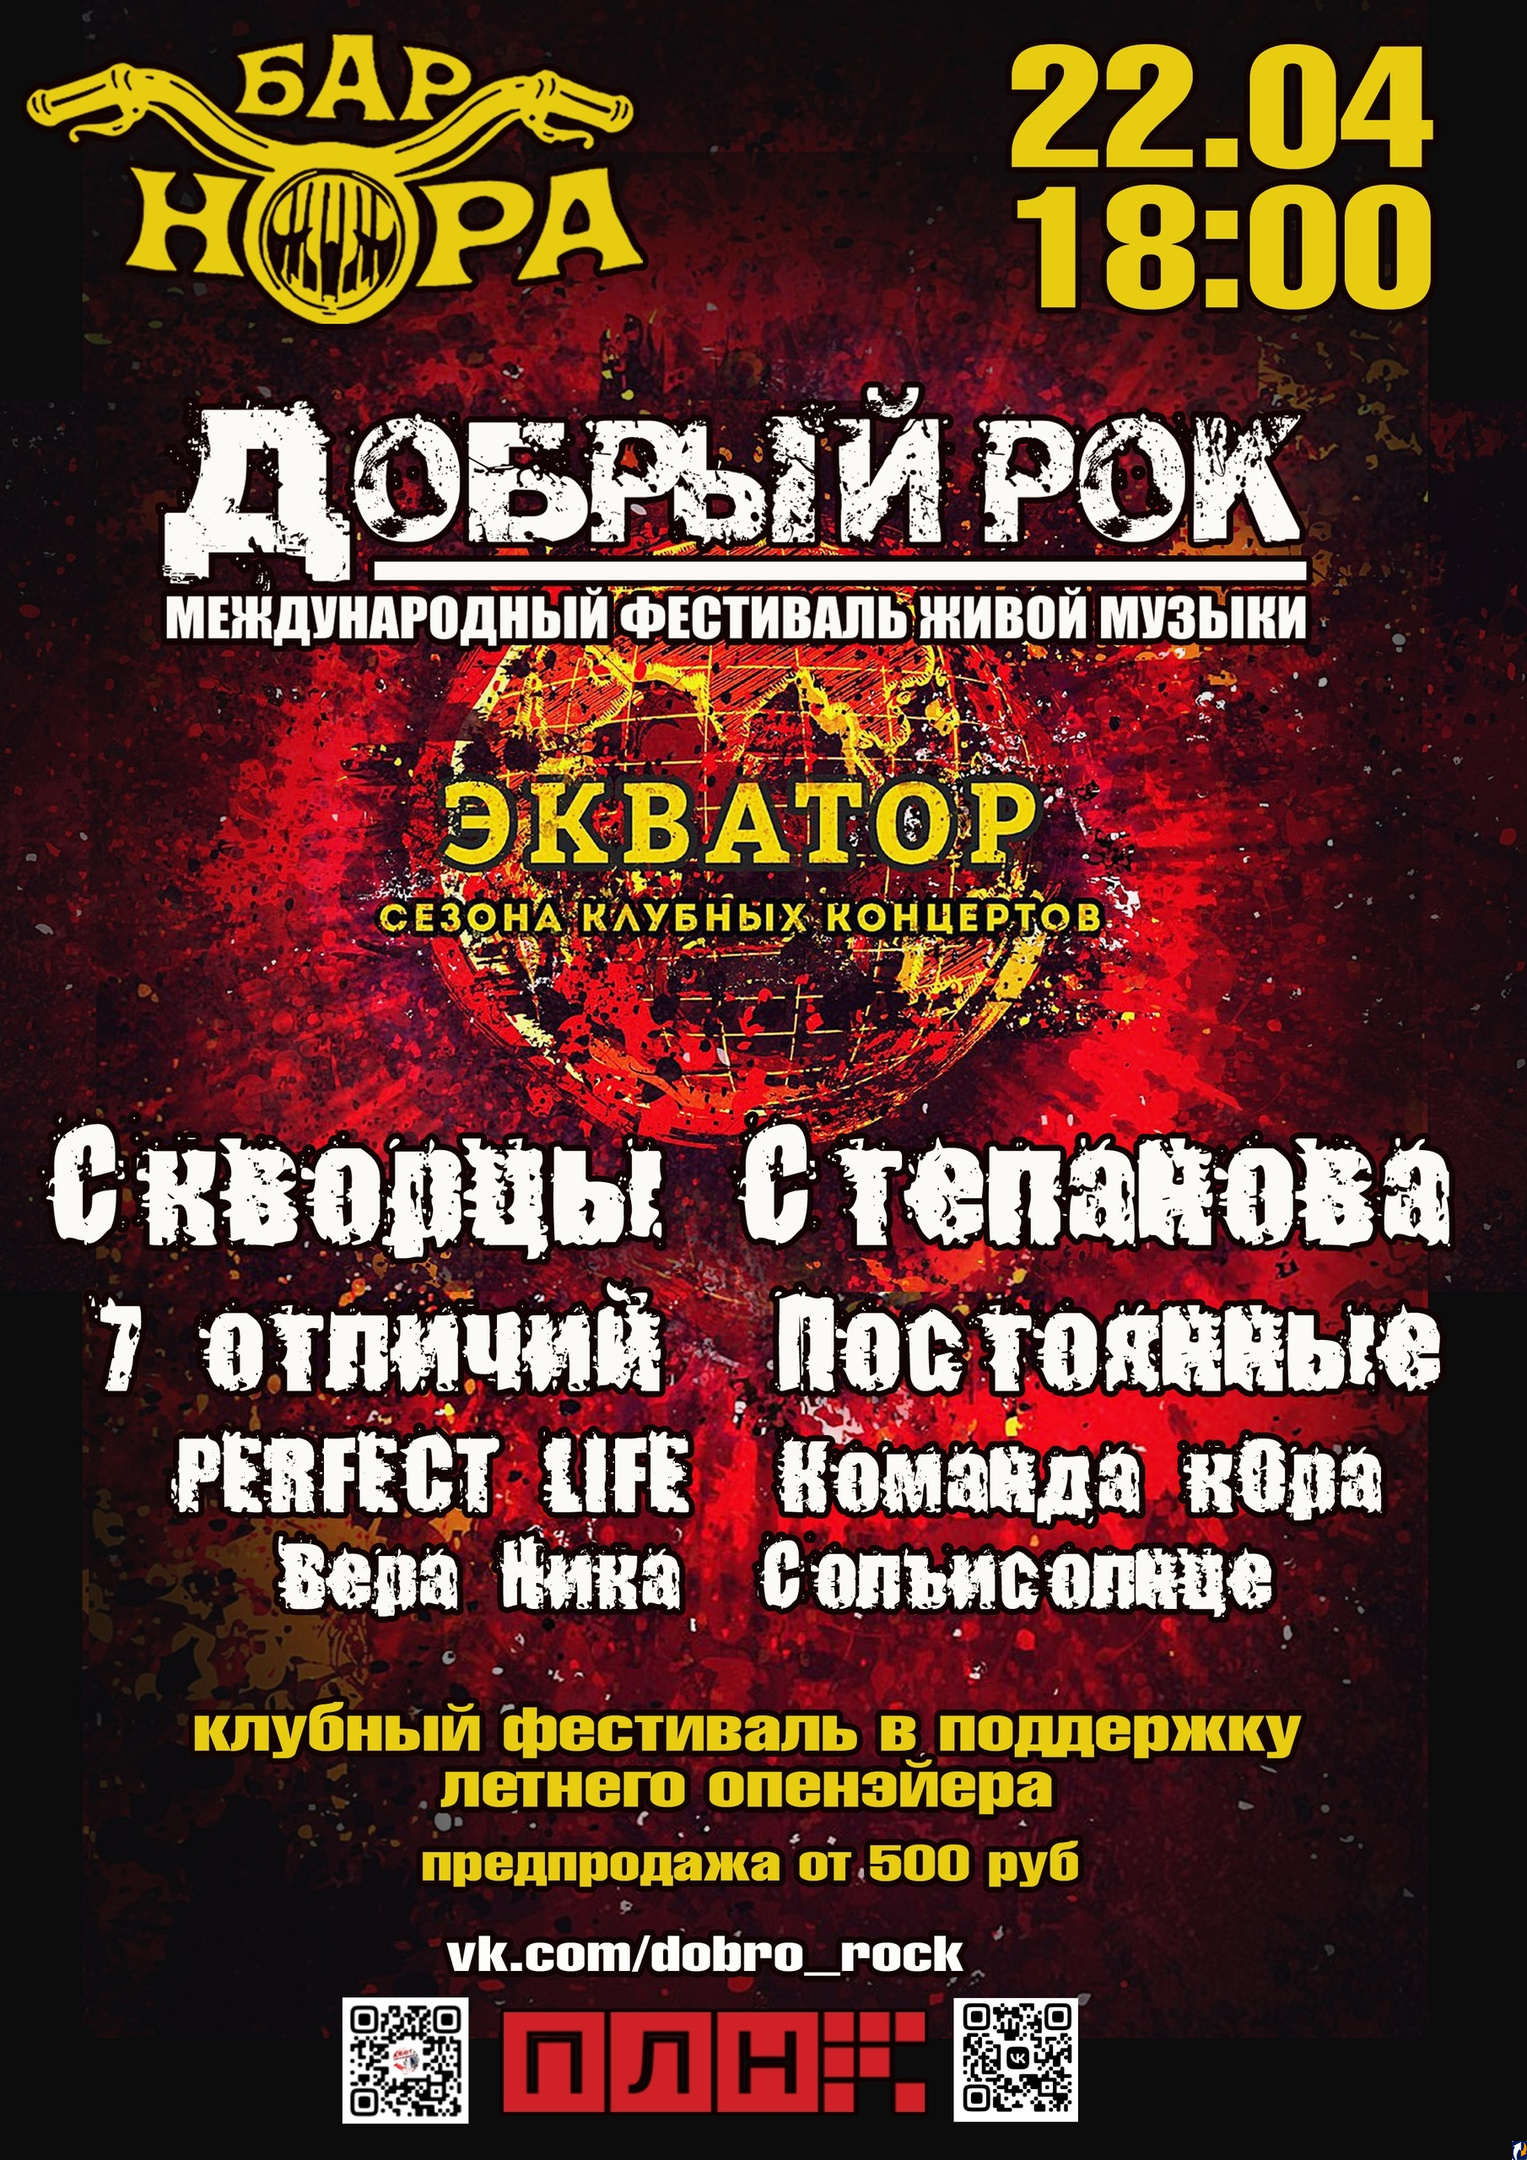 Клубный фестиваль в поддержку летнего «Доброго рока» пройдет в Пскове